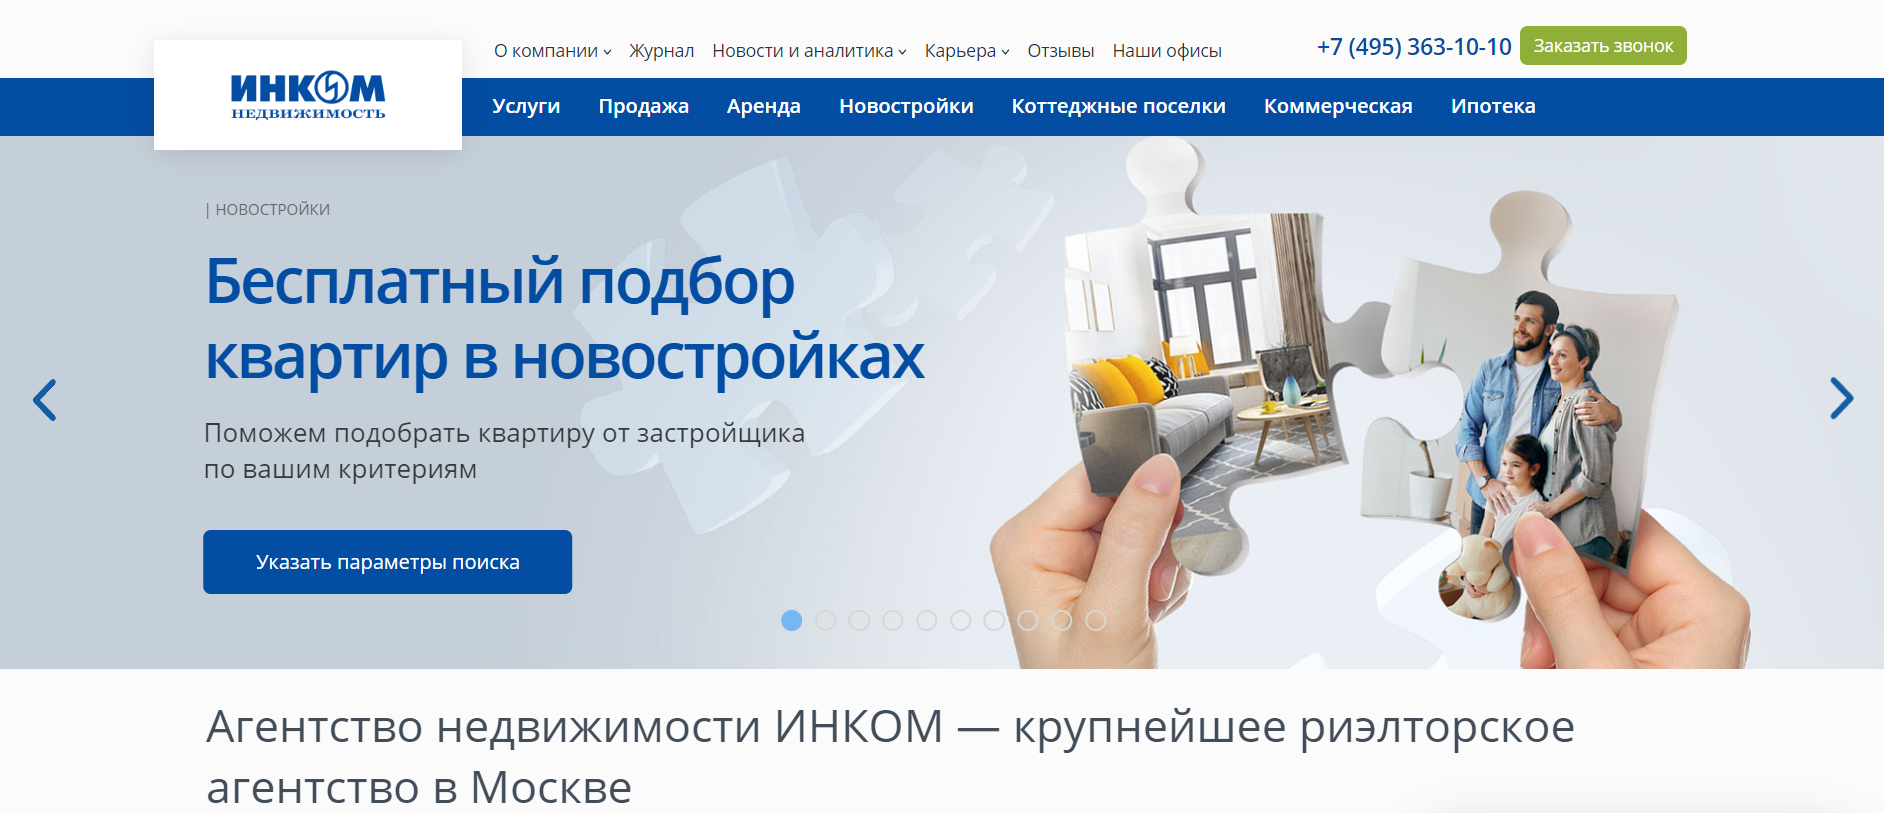 Агентство недвижимости ИНКОМ-Недвижимость в Москве: Важные факты перед сотрудничеством